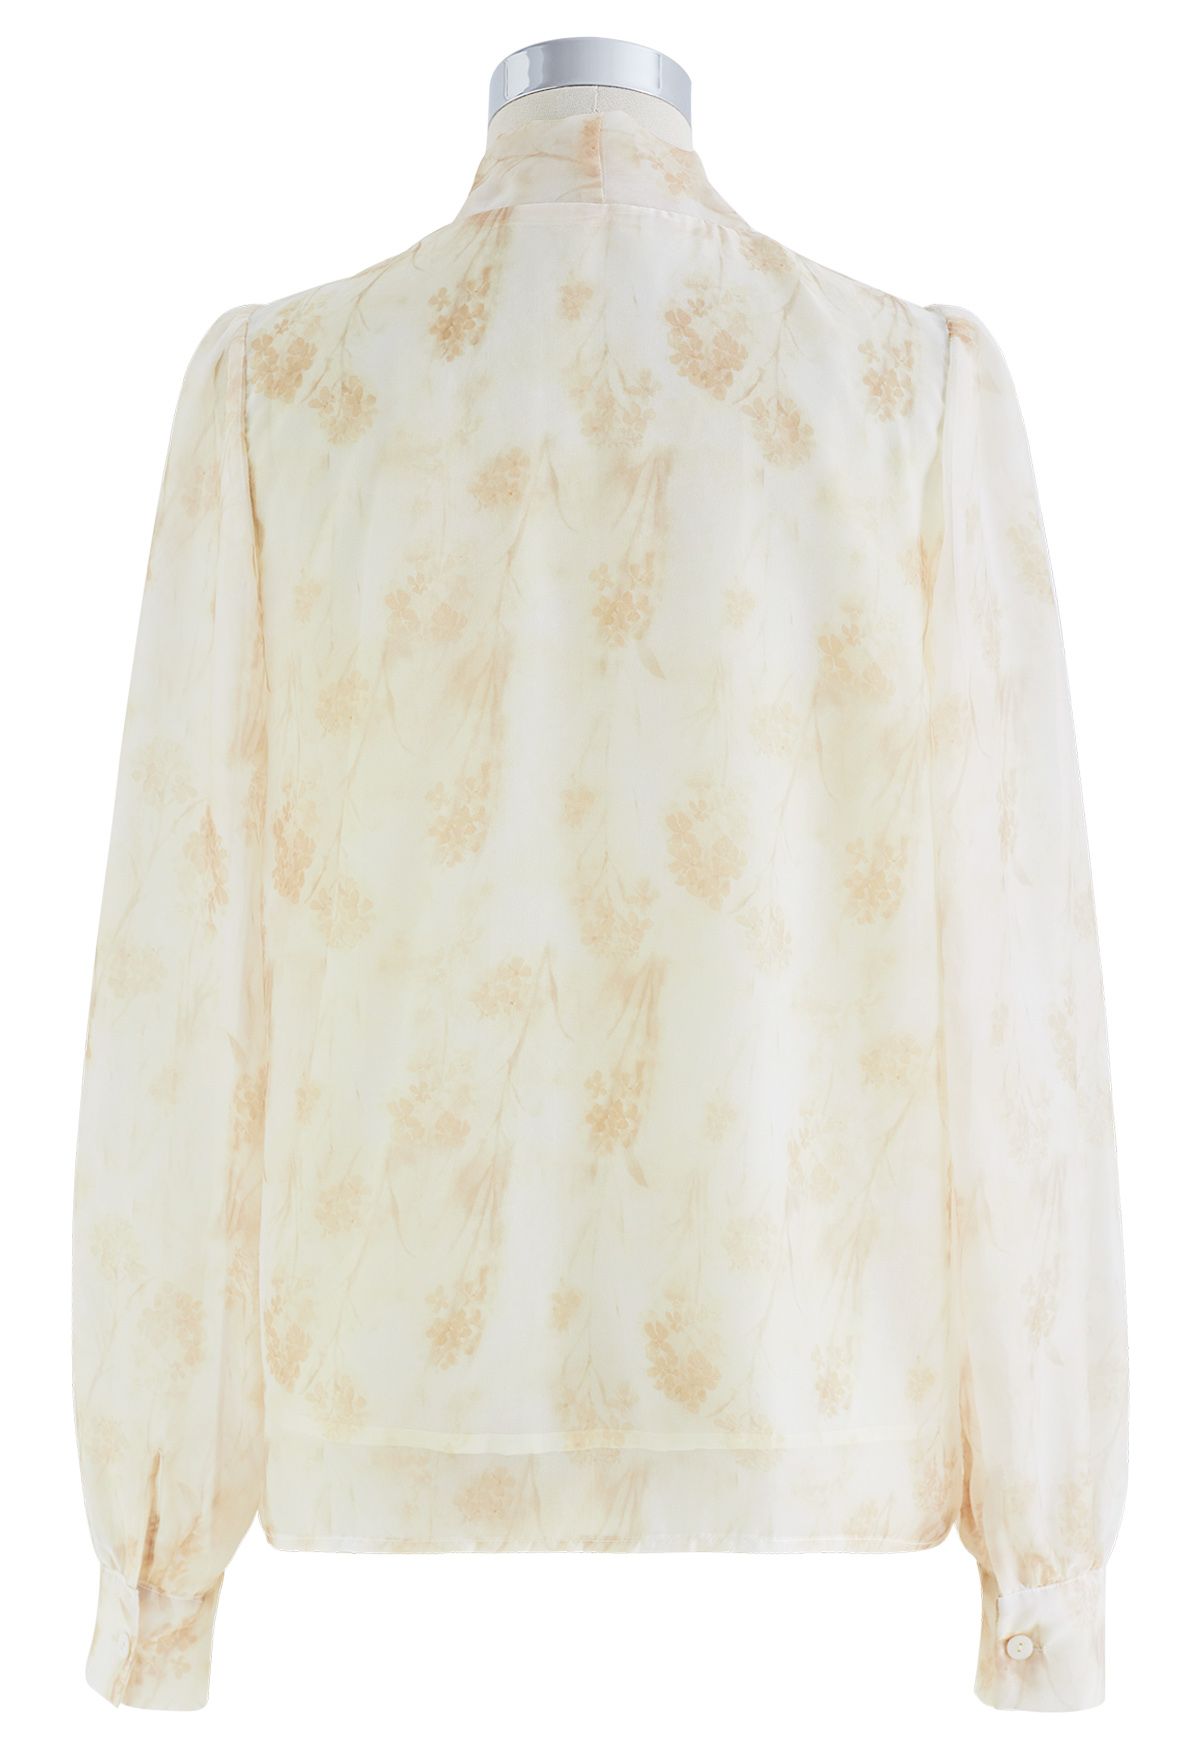 Camisa semitransparente com laço floral aquarela em damasco